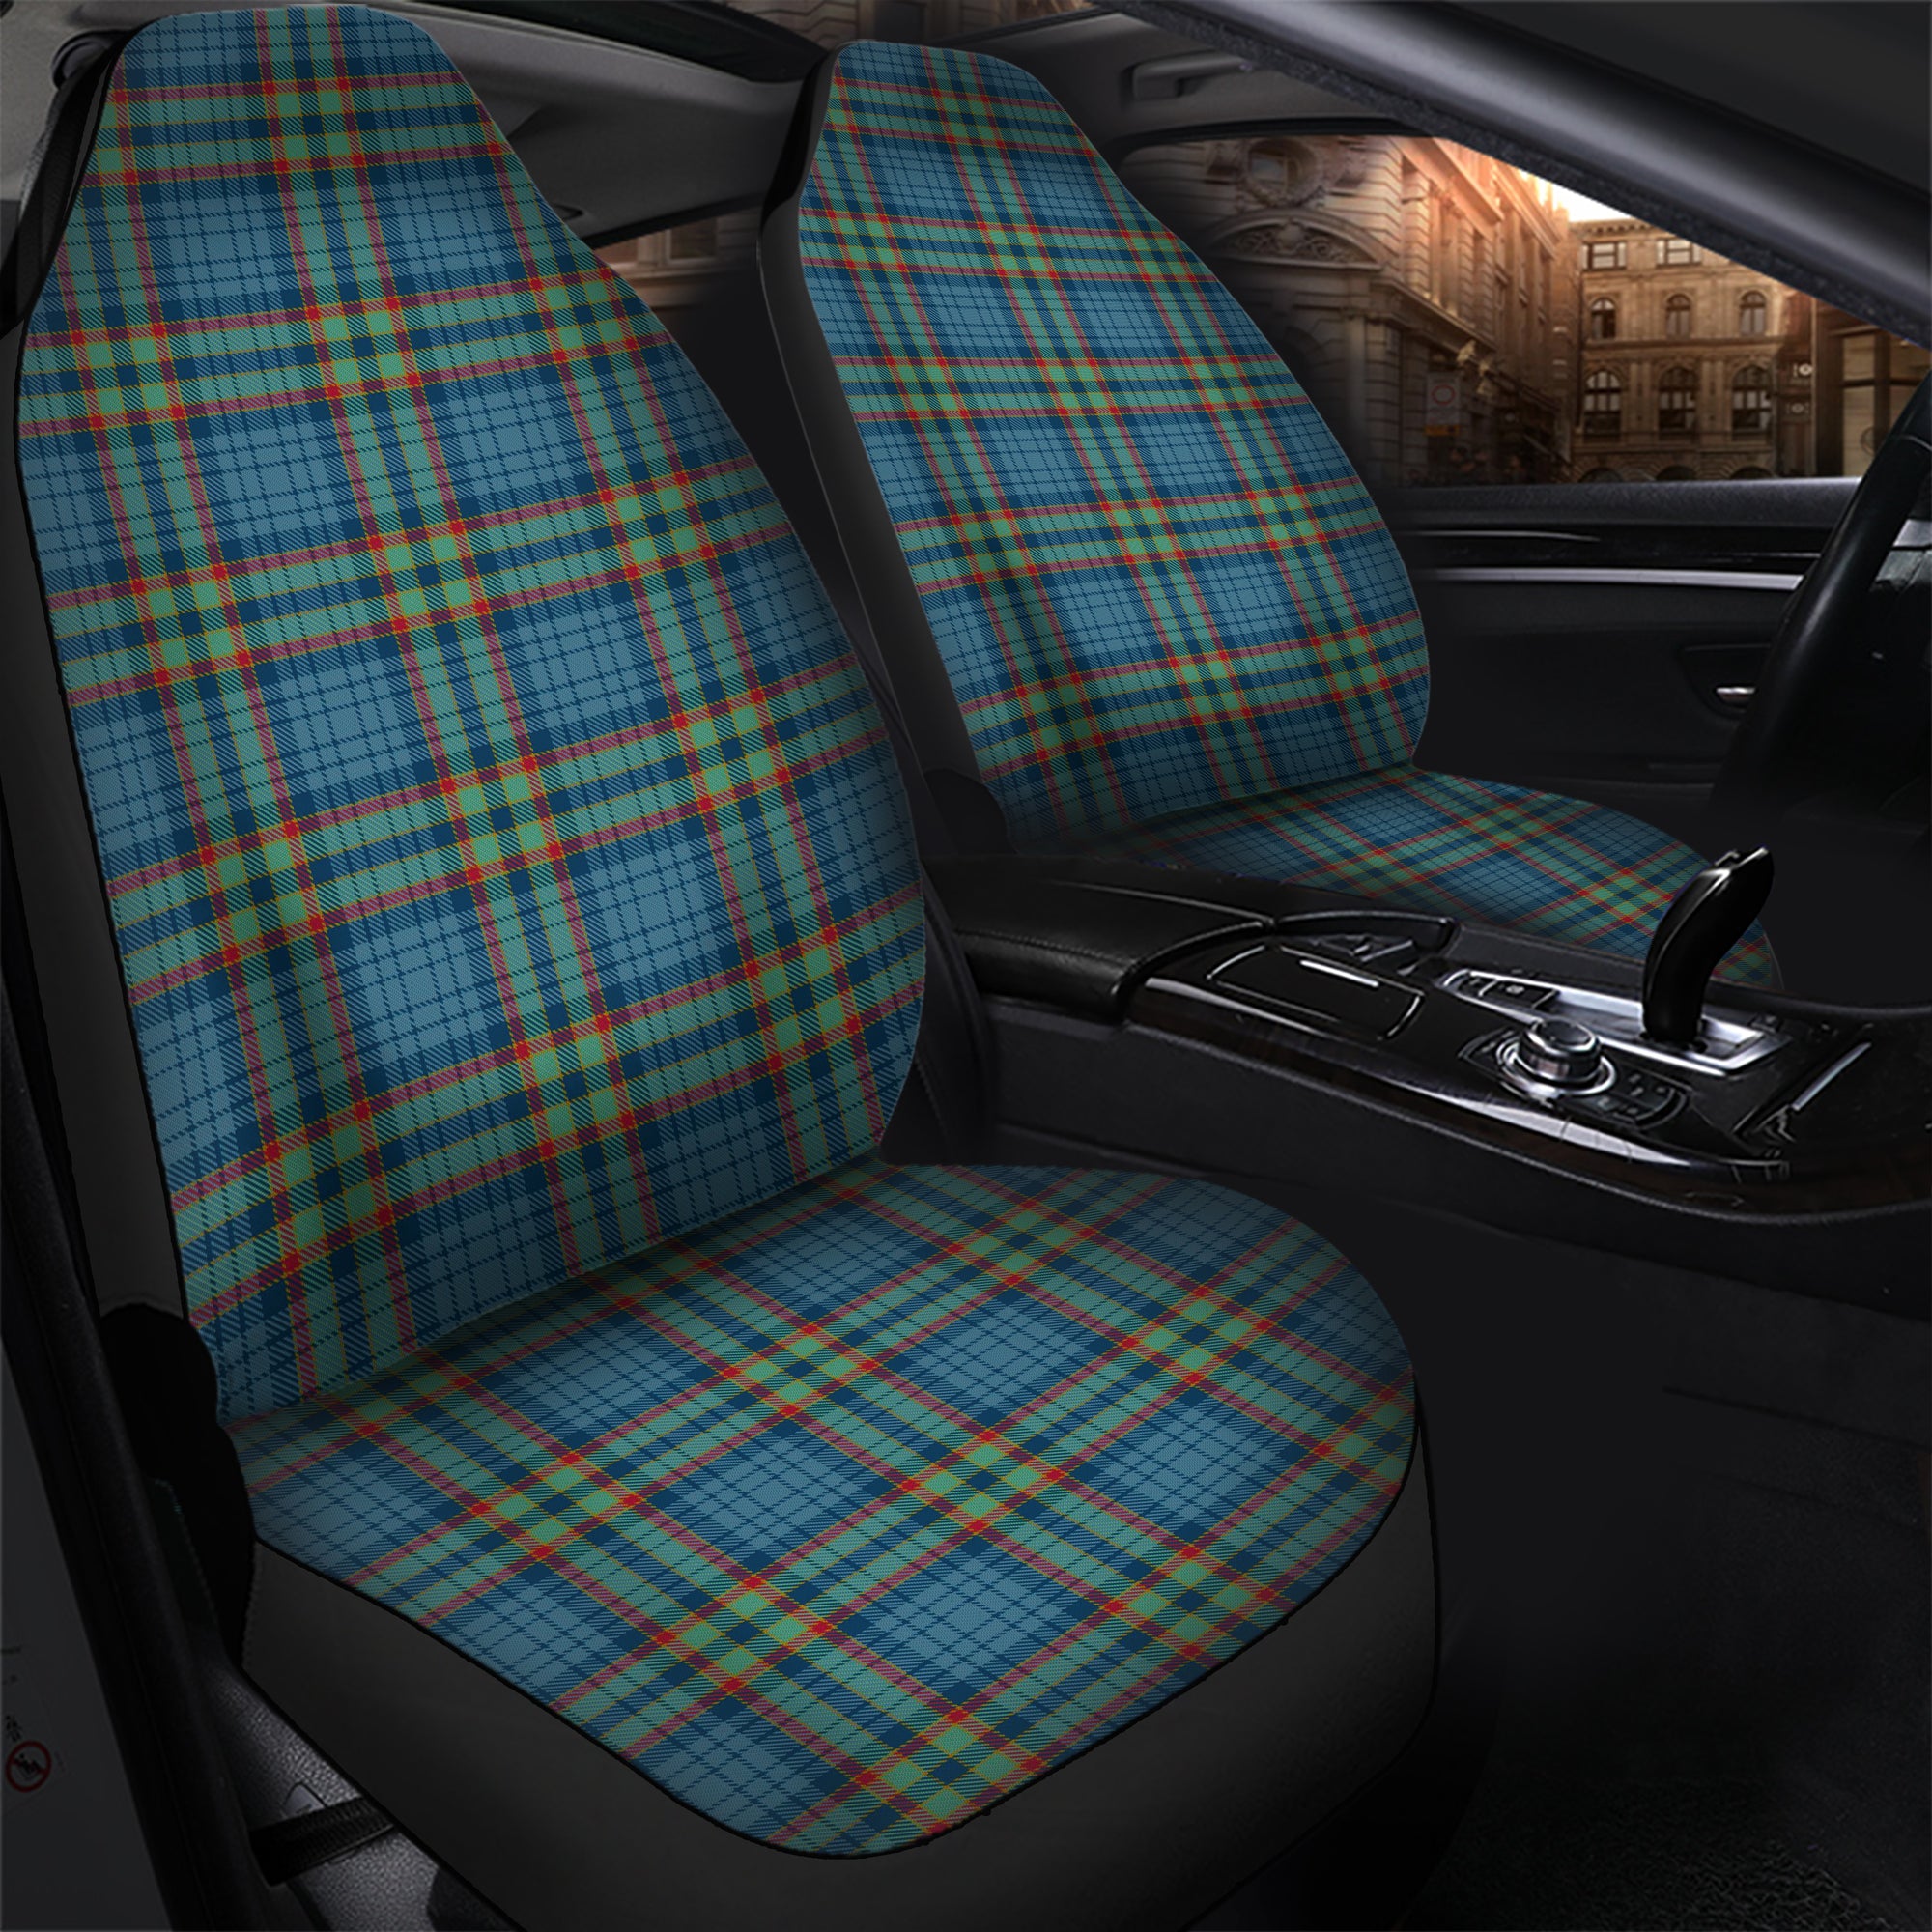 scottish-ralston-uk-clan-tartan-car-seat-cover